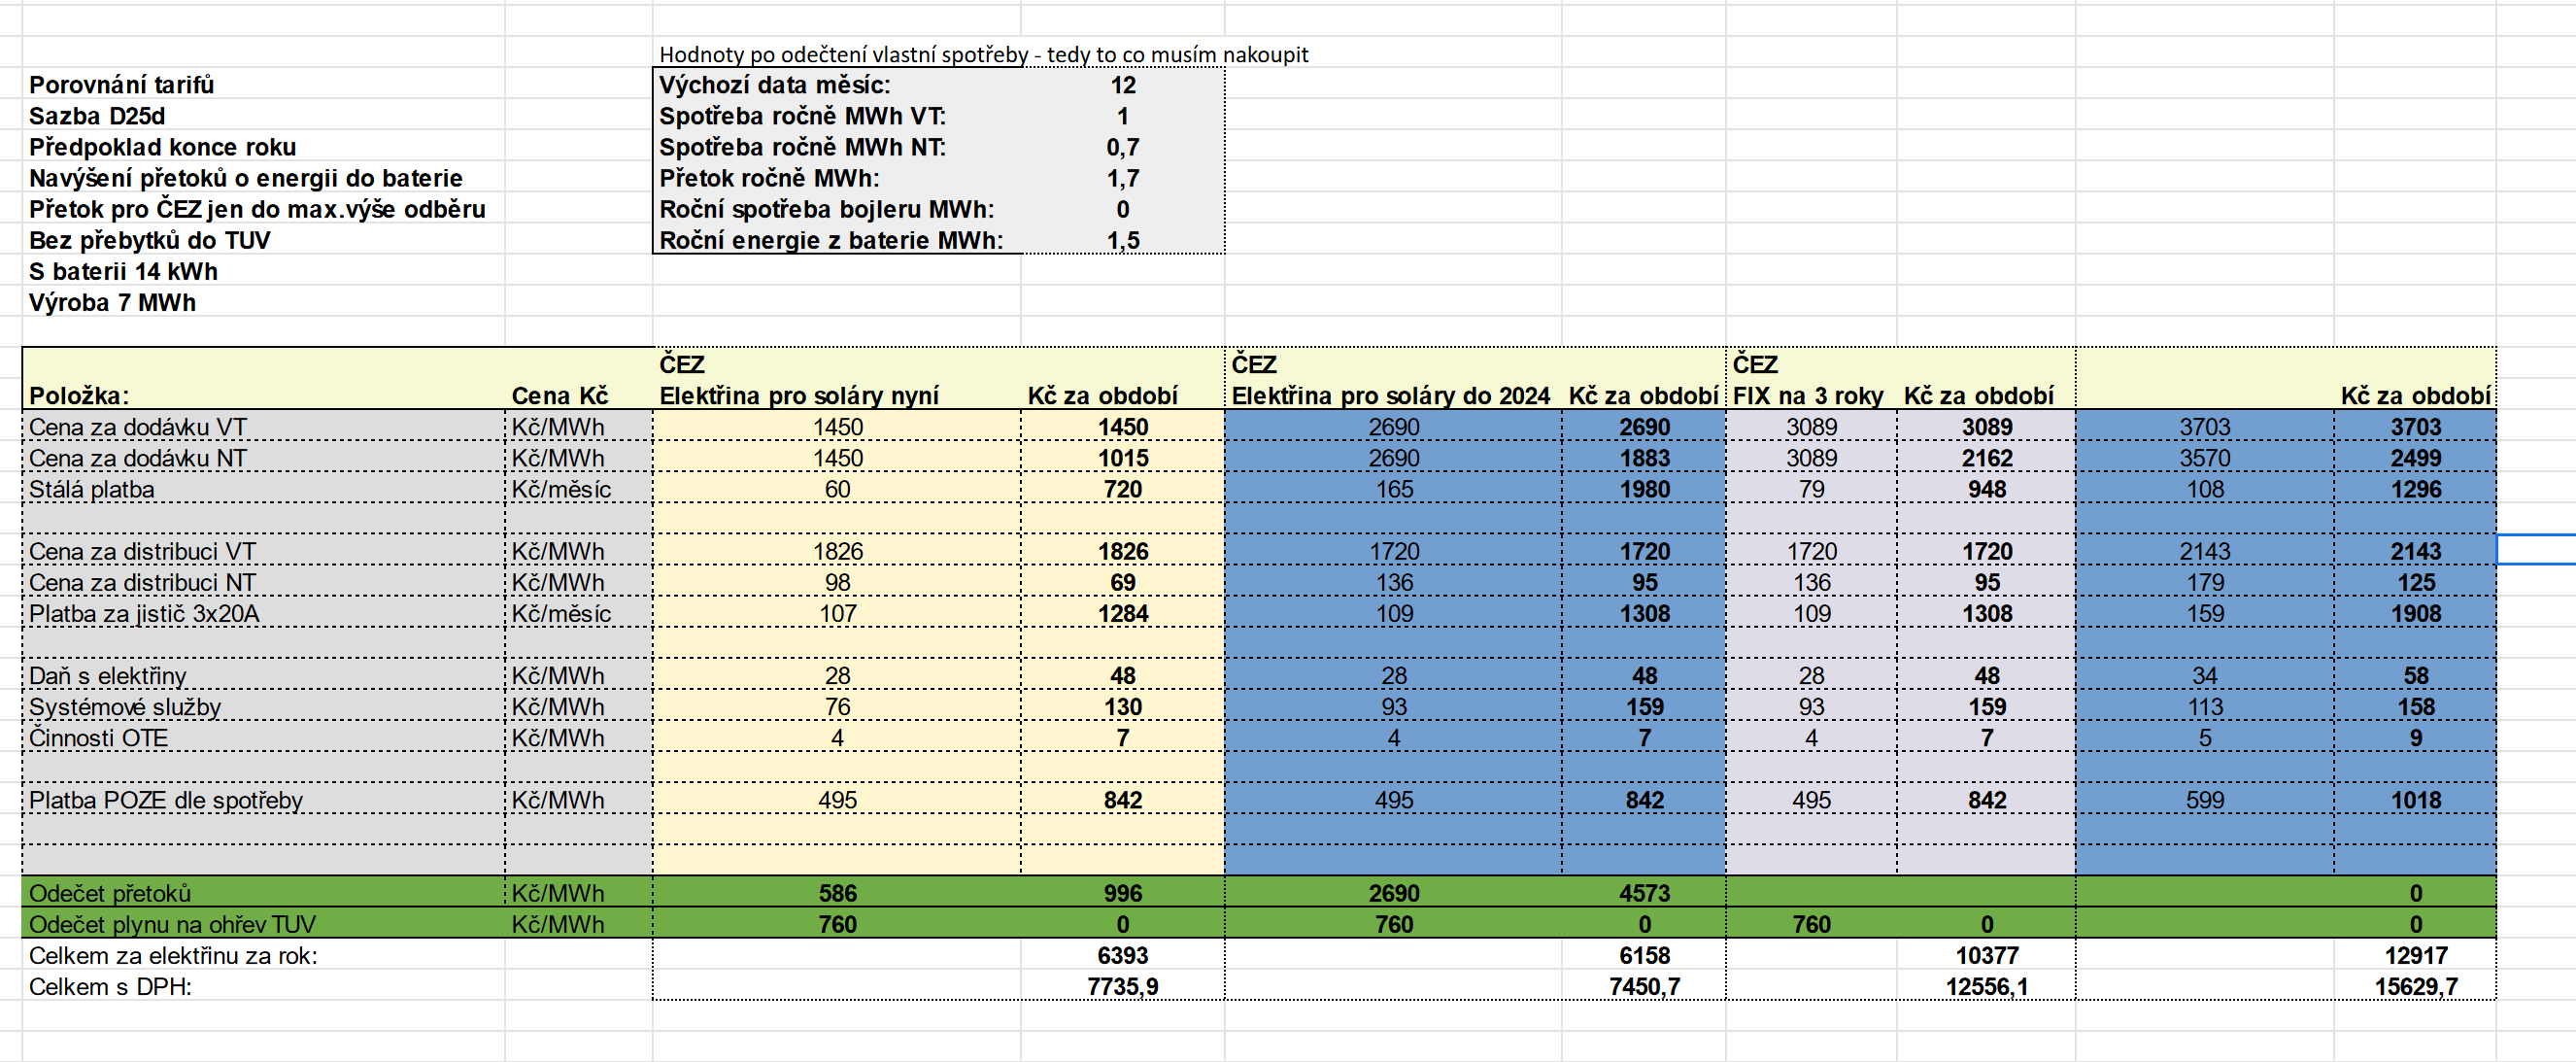 Screenshot 2021-12-02 at 09-02-02 Porovnání tarifů virtuální baterie od ČEZu a ostatních xlsx.png